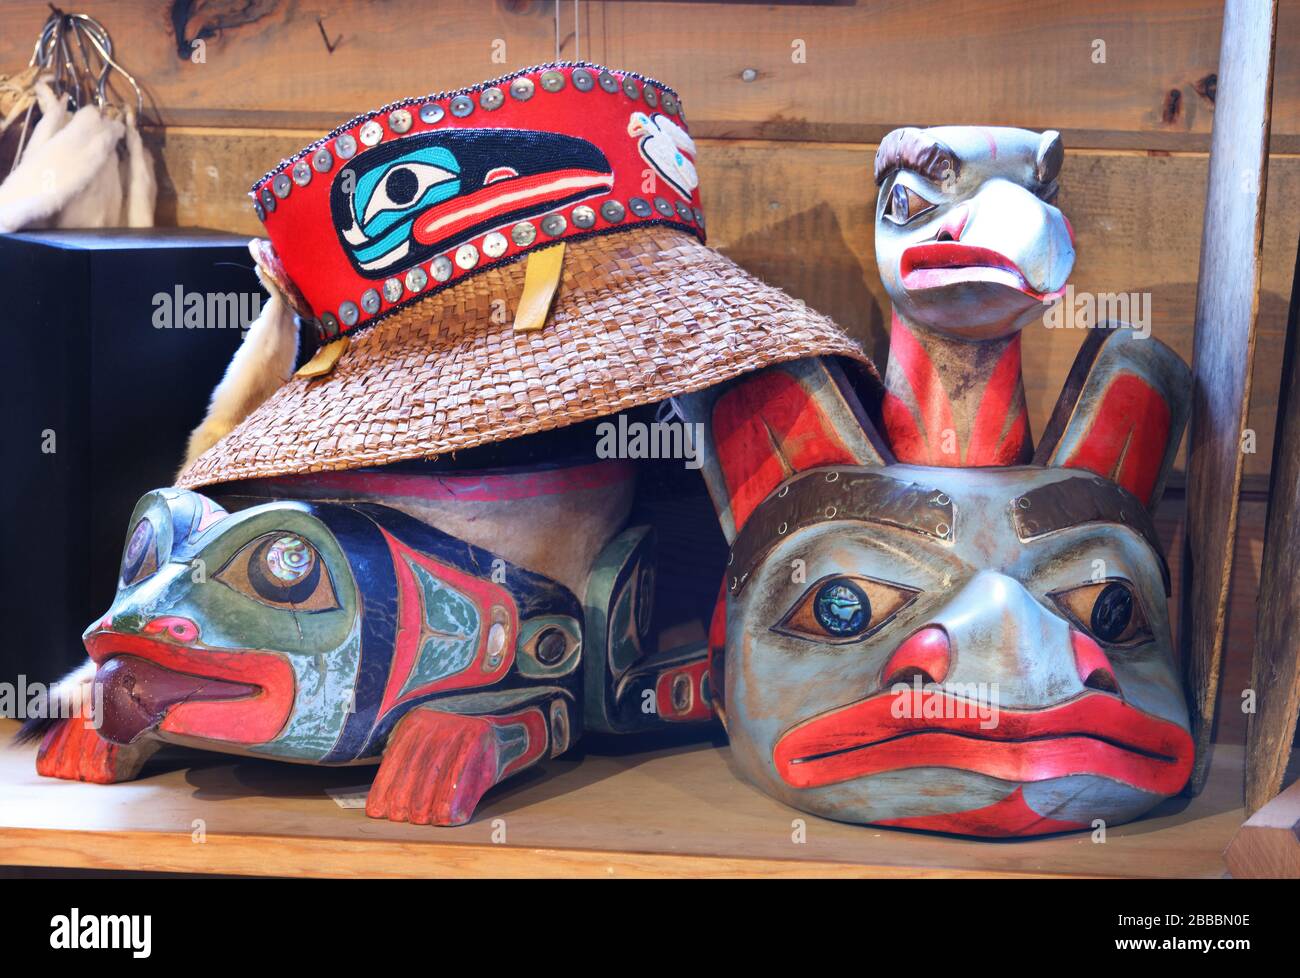 Cappello di paglia in stile Haida sulla parte superiore di una maschera frontale di rana ispirata a Tlingi. A destra c'è una maschera frontale d'orso ispirata a Tlingit nel negozio d'arte nativo Deil'e.ann & Tlingit Botanicals, Icy Strait Point, Alaska, U.S.A. Foto Stock